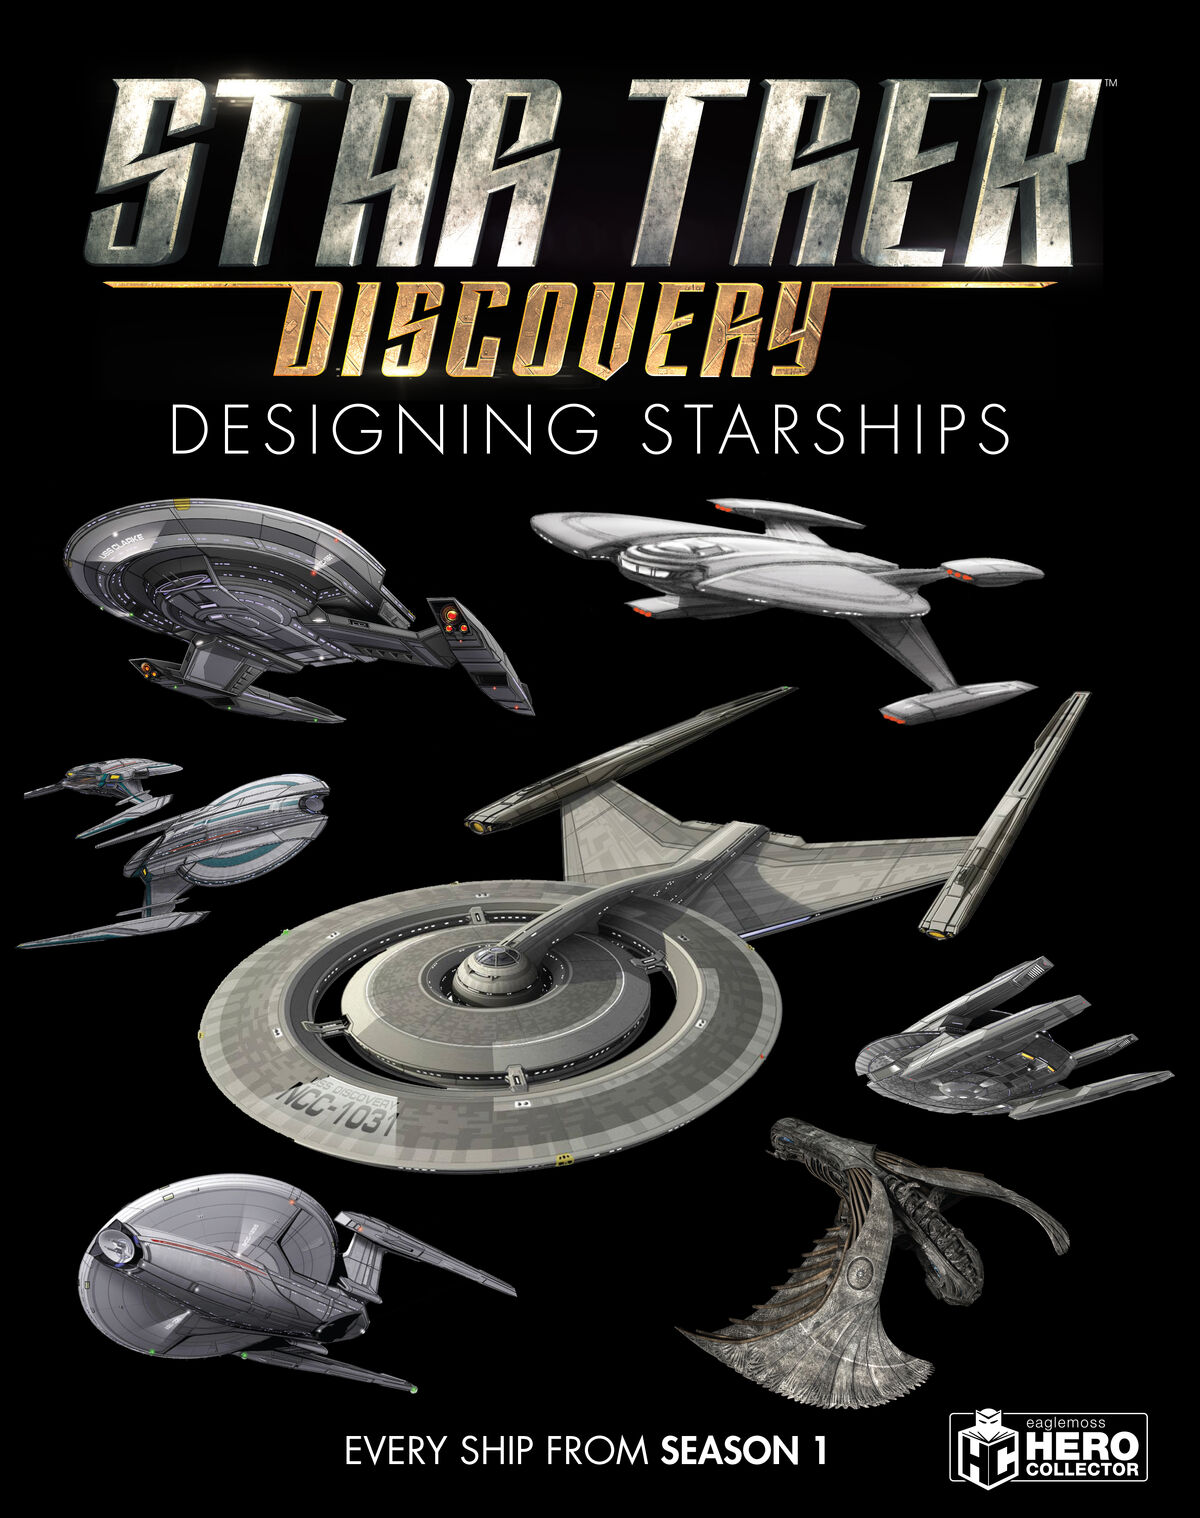 starship design star trek